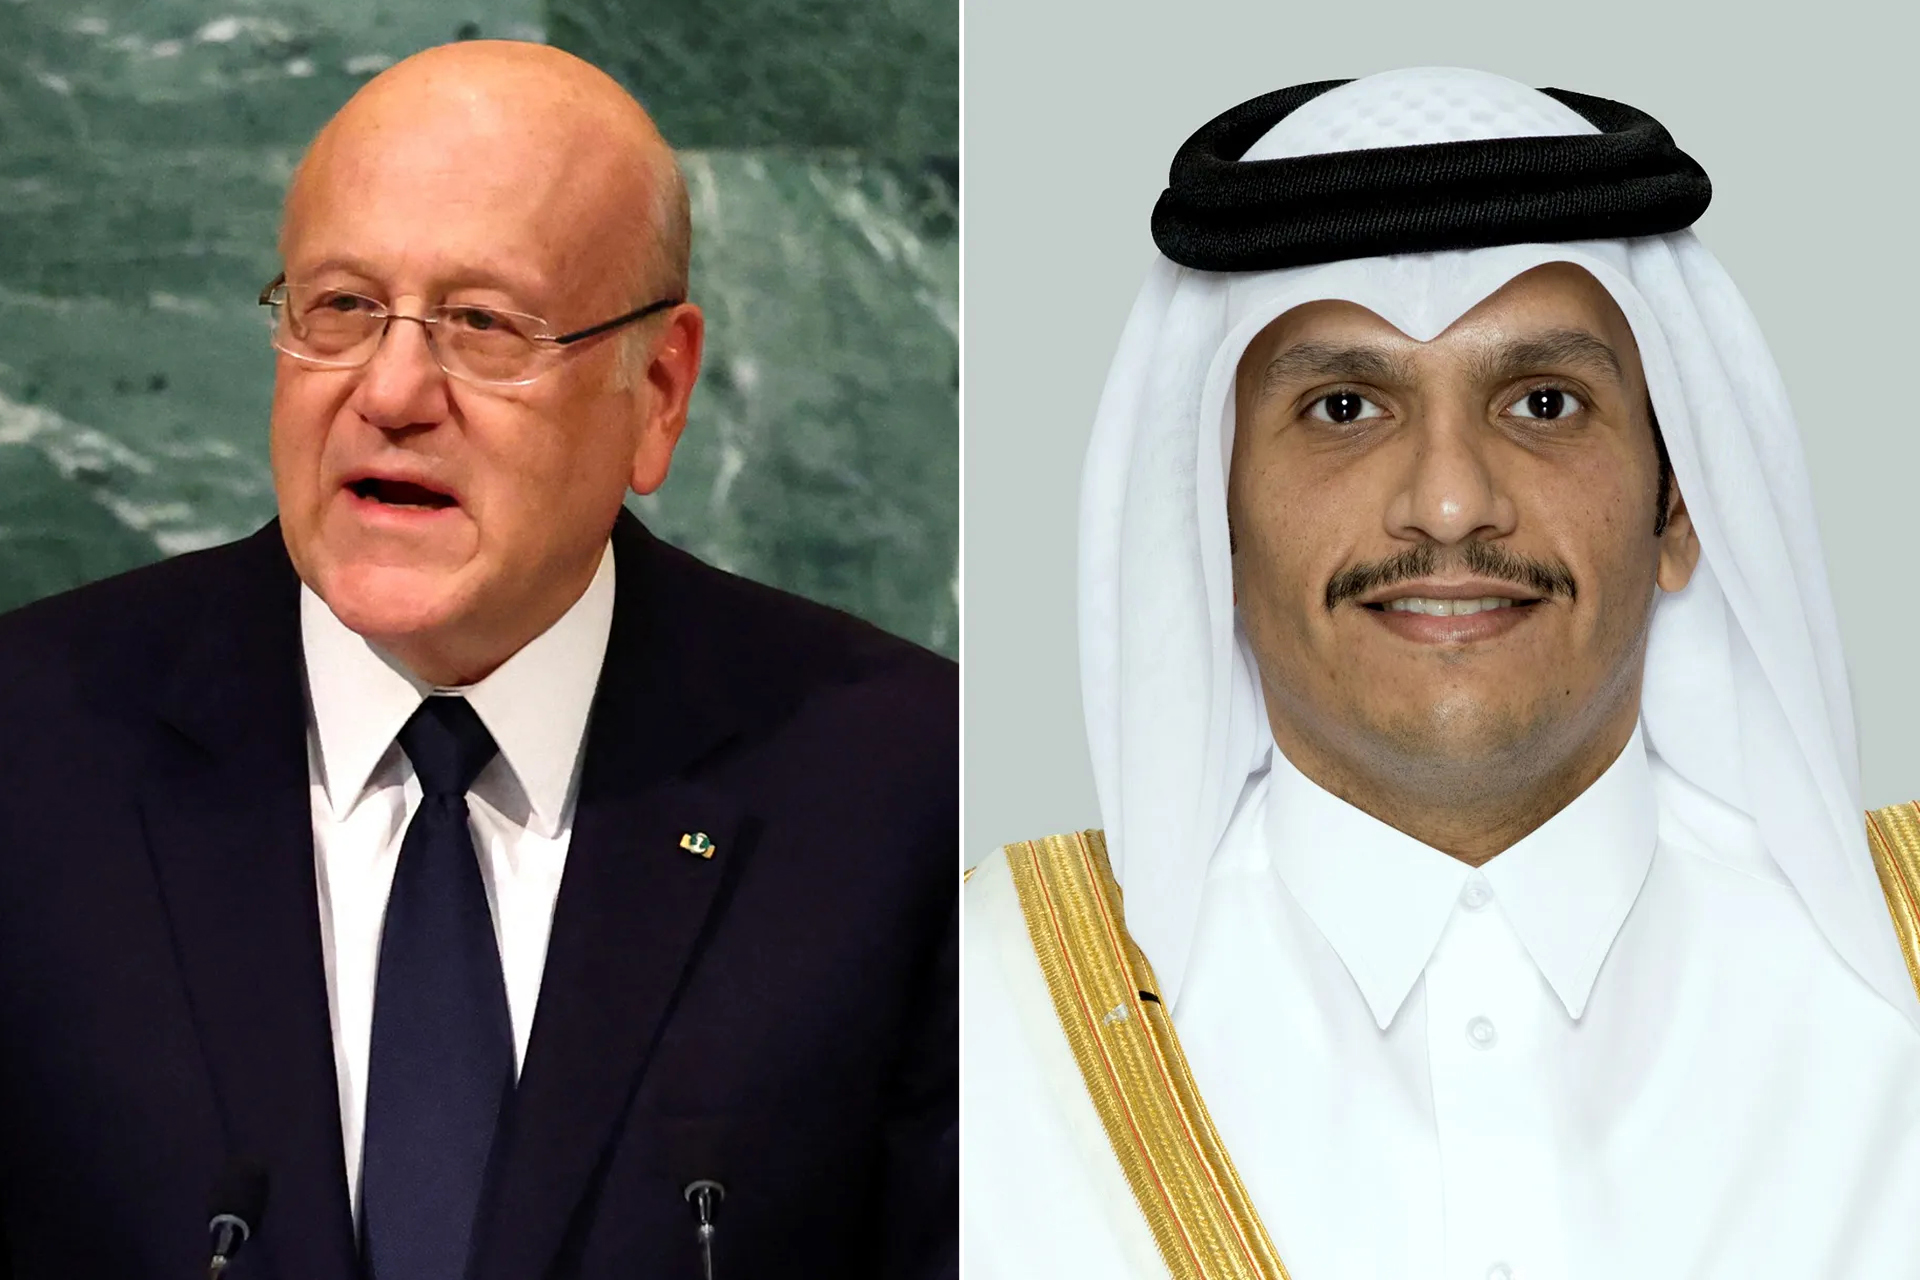 الدوحة وبيروت تحذران من جر لبنان لحرب إقليمية | أخبار – البوكس نيوز